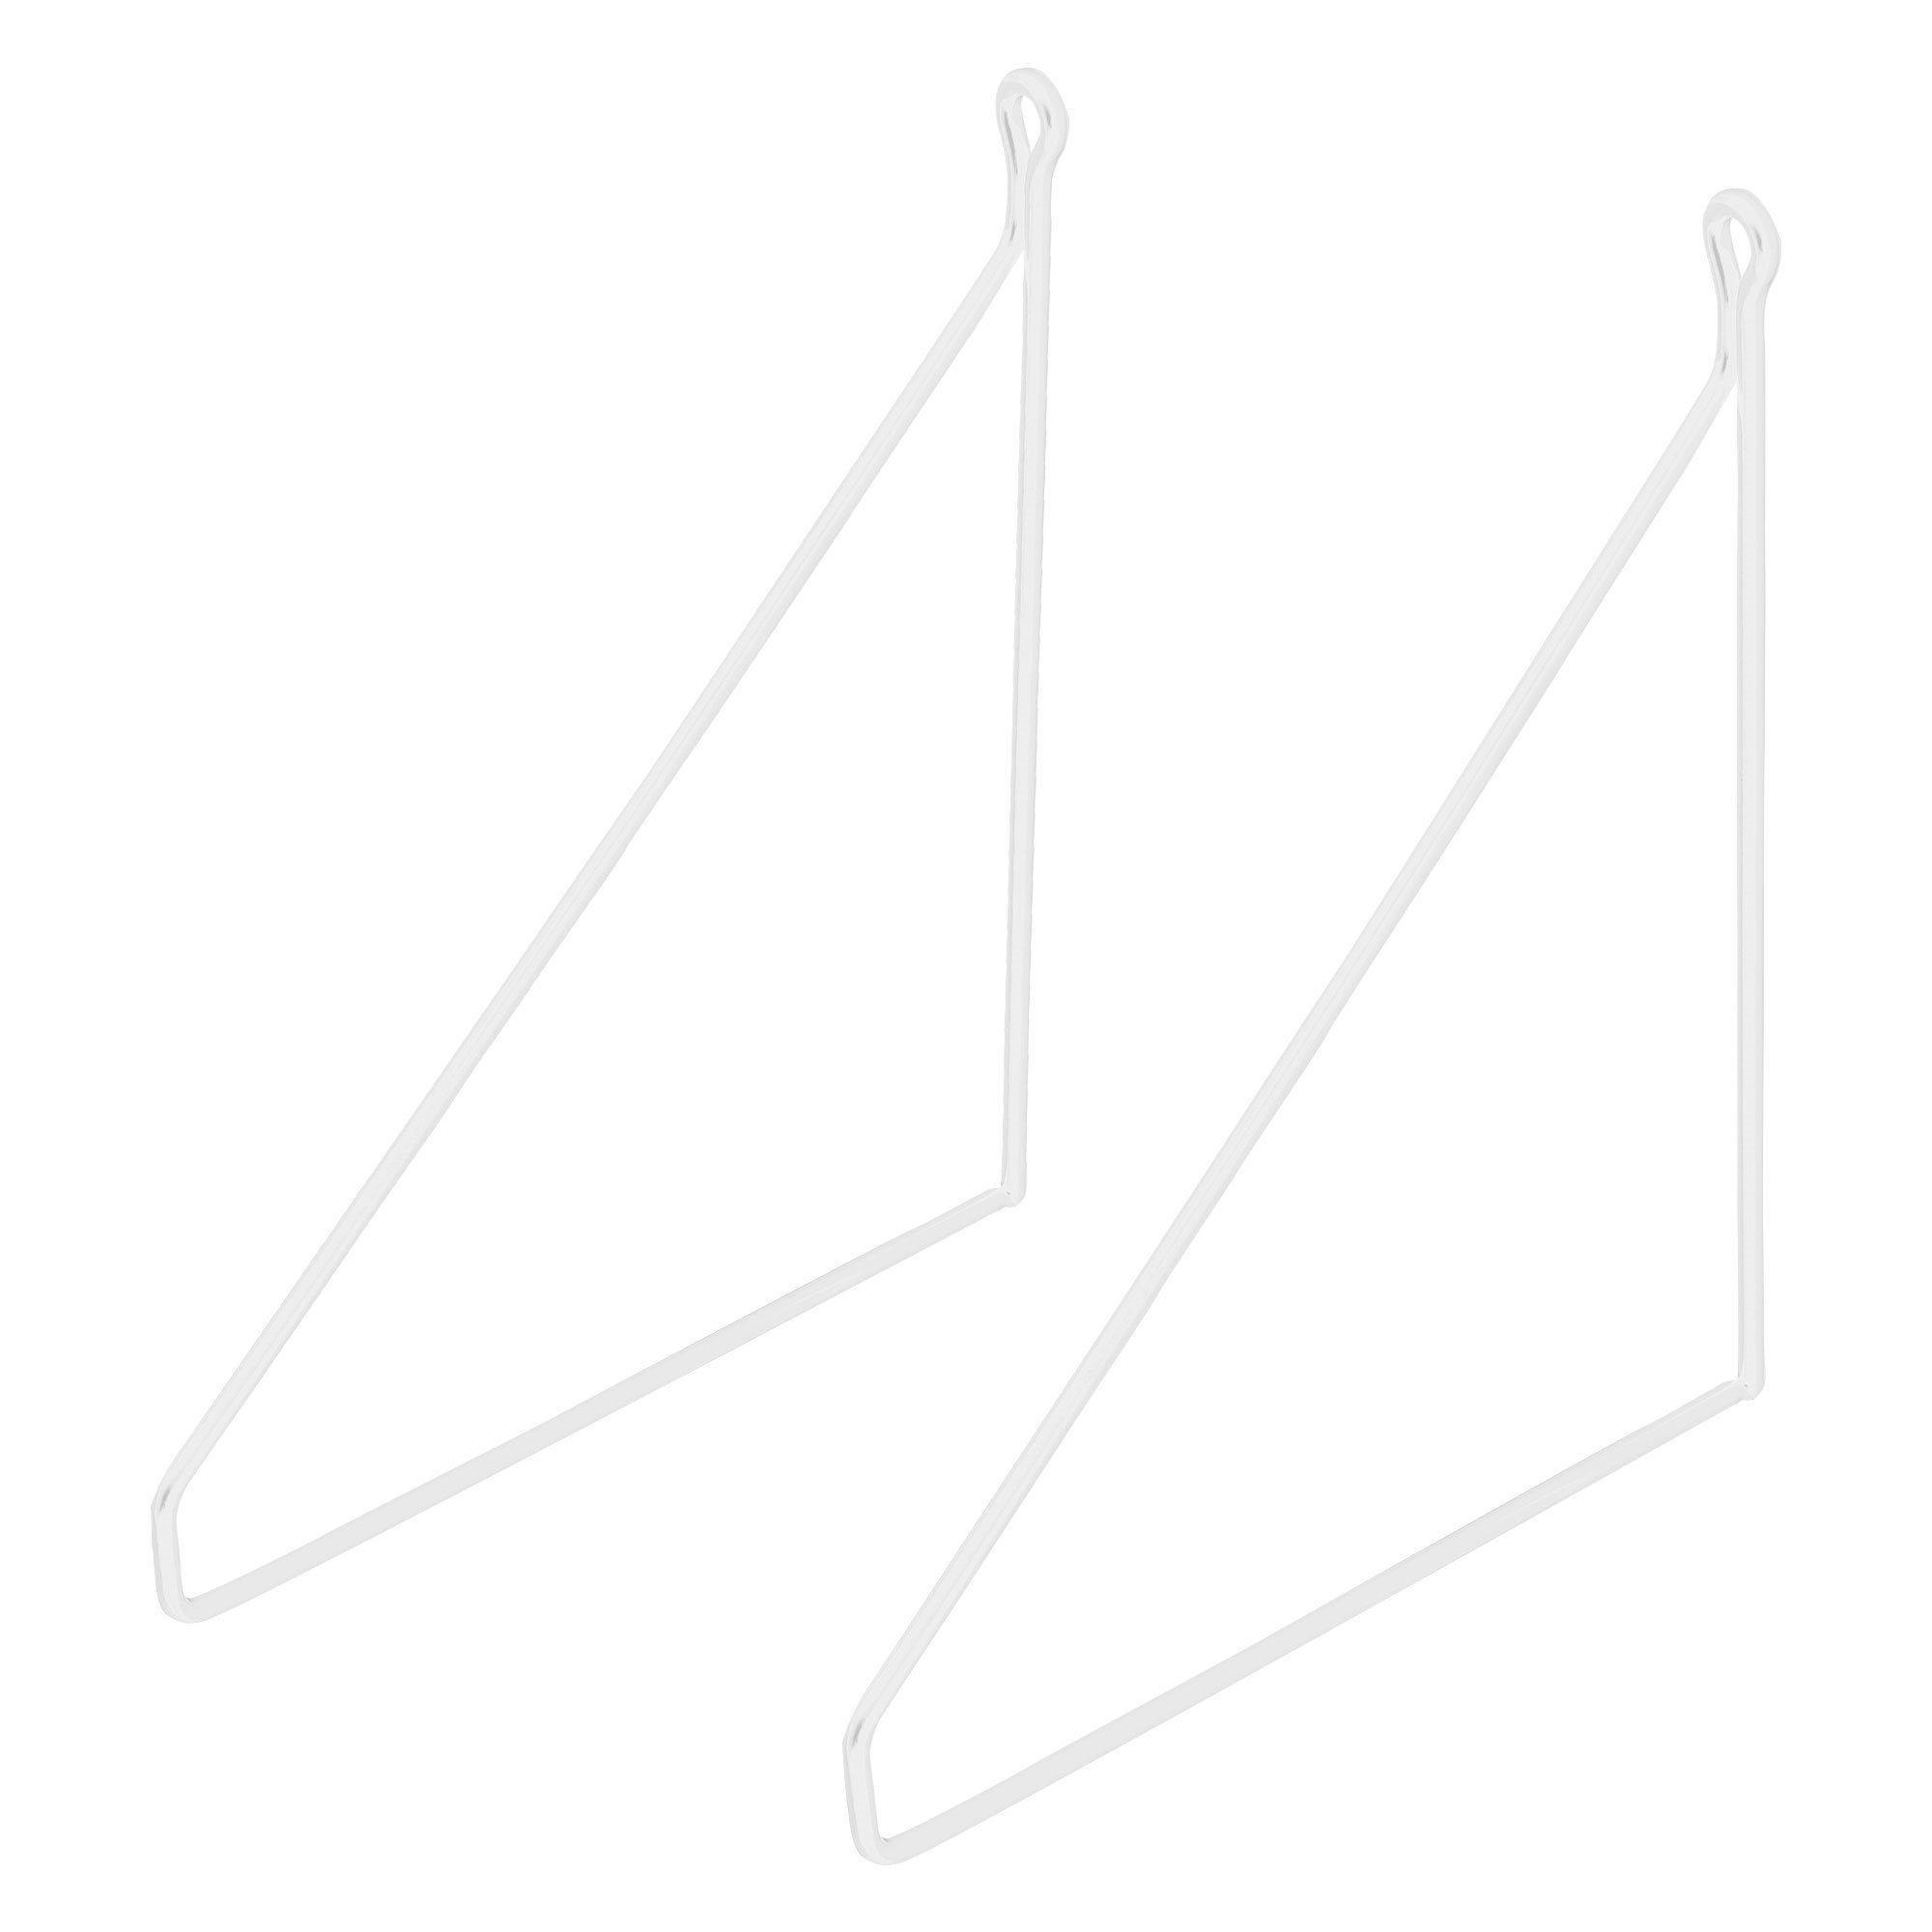 2 Weiß Wandmontage Regalträger, Regalwinkel Schwebe 200mm ML-DESIGN Regalhalterung Dreieckig Wandhalterung Metall Draht Stück Regal